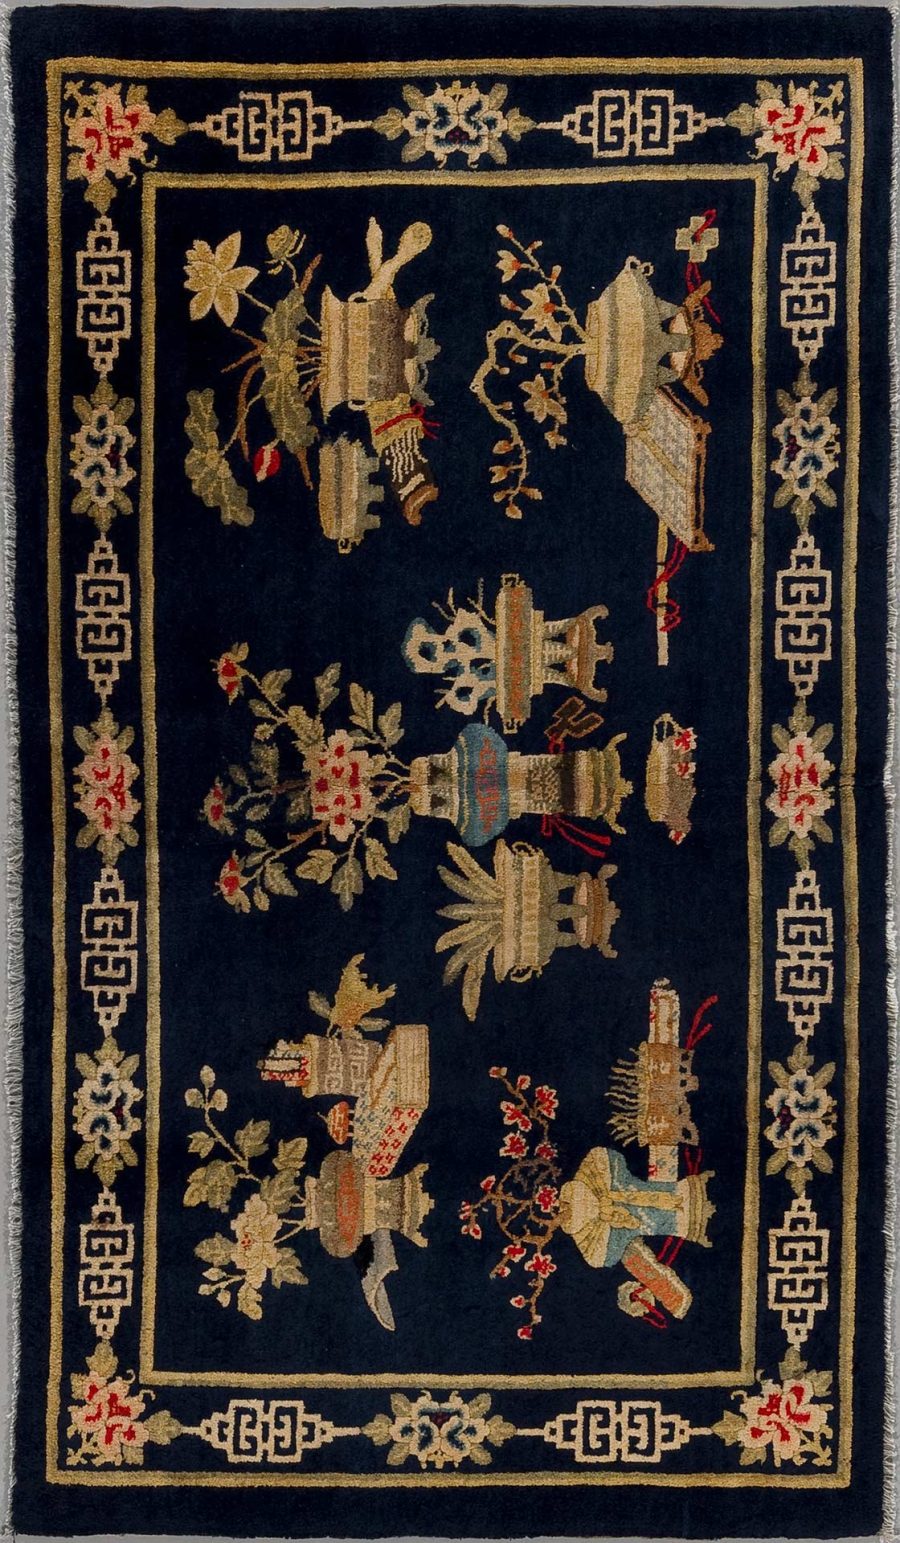 Detaillierter orientalischer Teppich mit dunkelblauem Hintergrund und komplizierten Mustern, einschließlich stilisierter Figuren, Blumen und geometrischer Ränder in Farbtönen von Gold, Rot und Weiß.